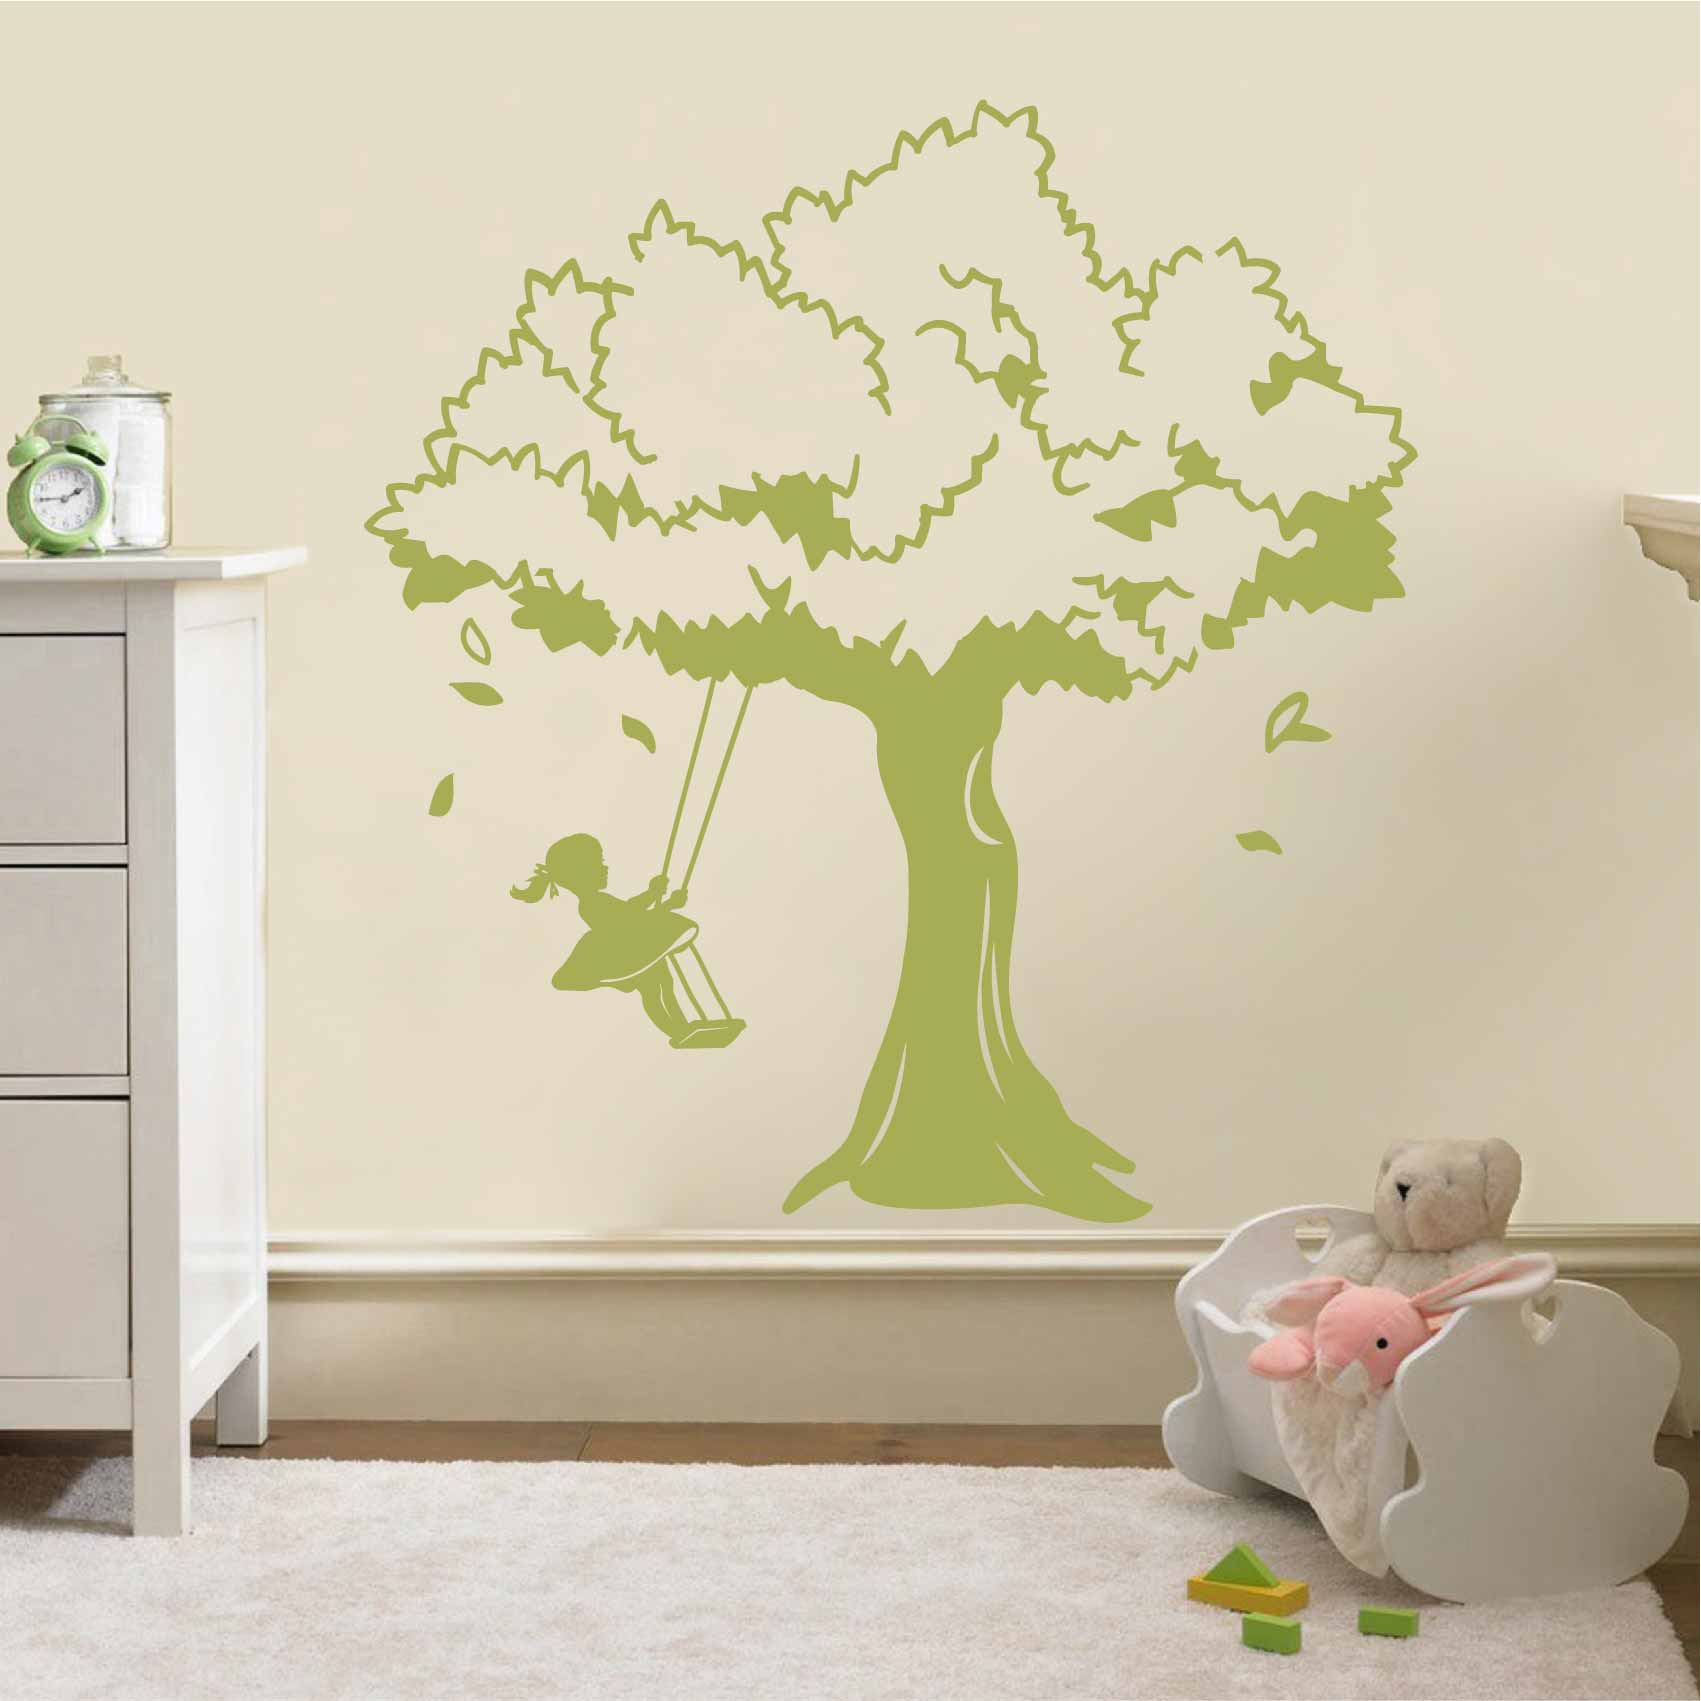 stickers-arbre-balancoire-ref51arbre-stickers-muraux-arbre-enfant-autocollant-deco-chambre-enfant-bébé-garcon-fille-sticker-mural-arbre